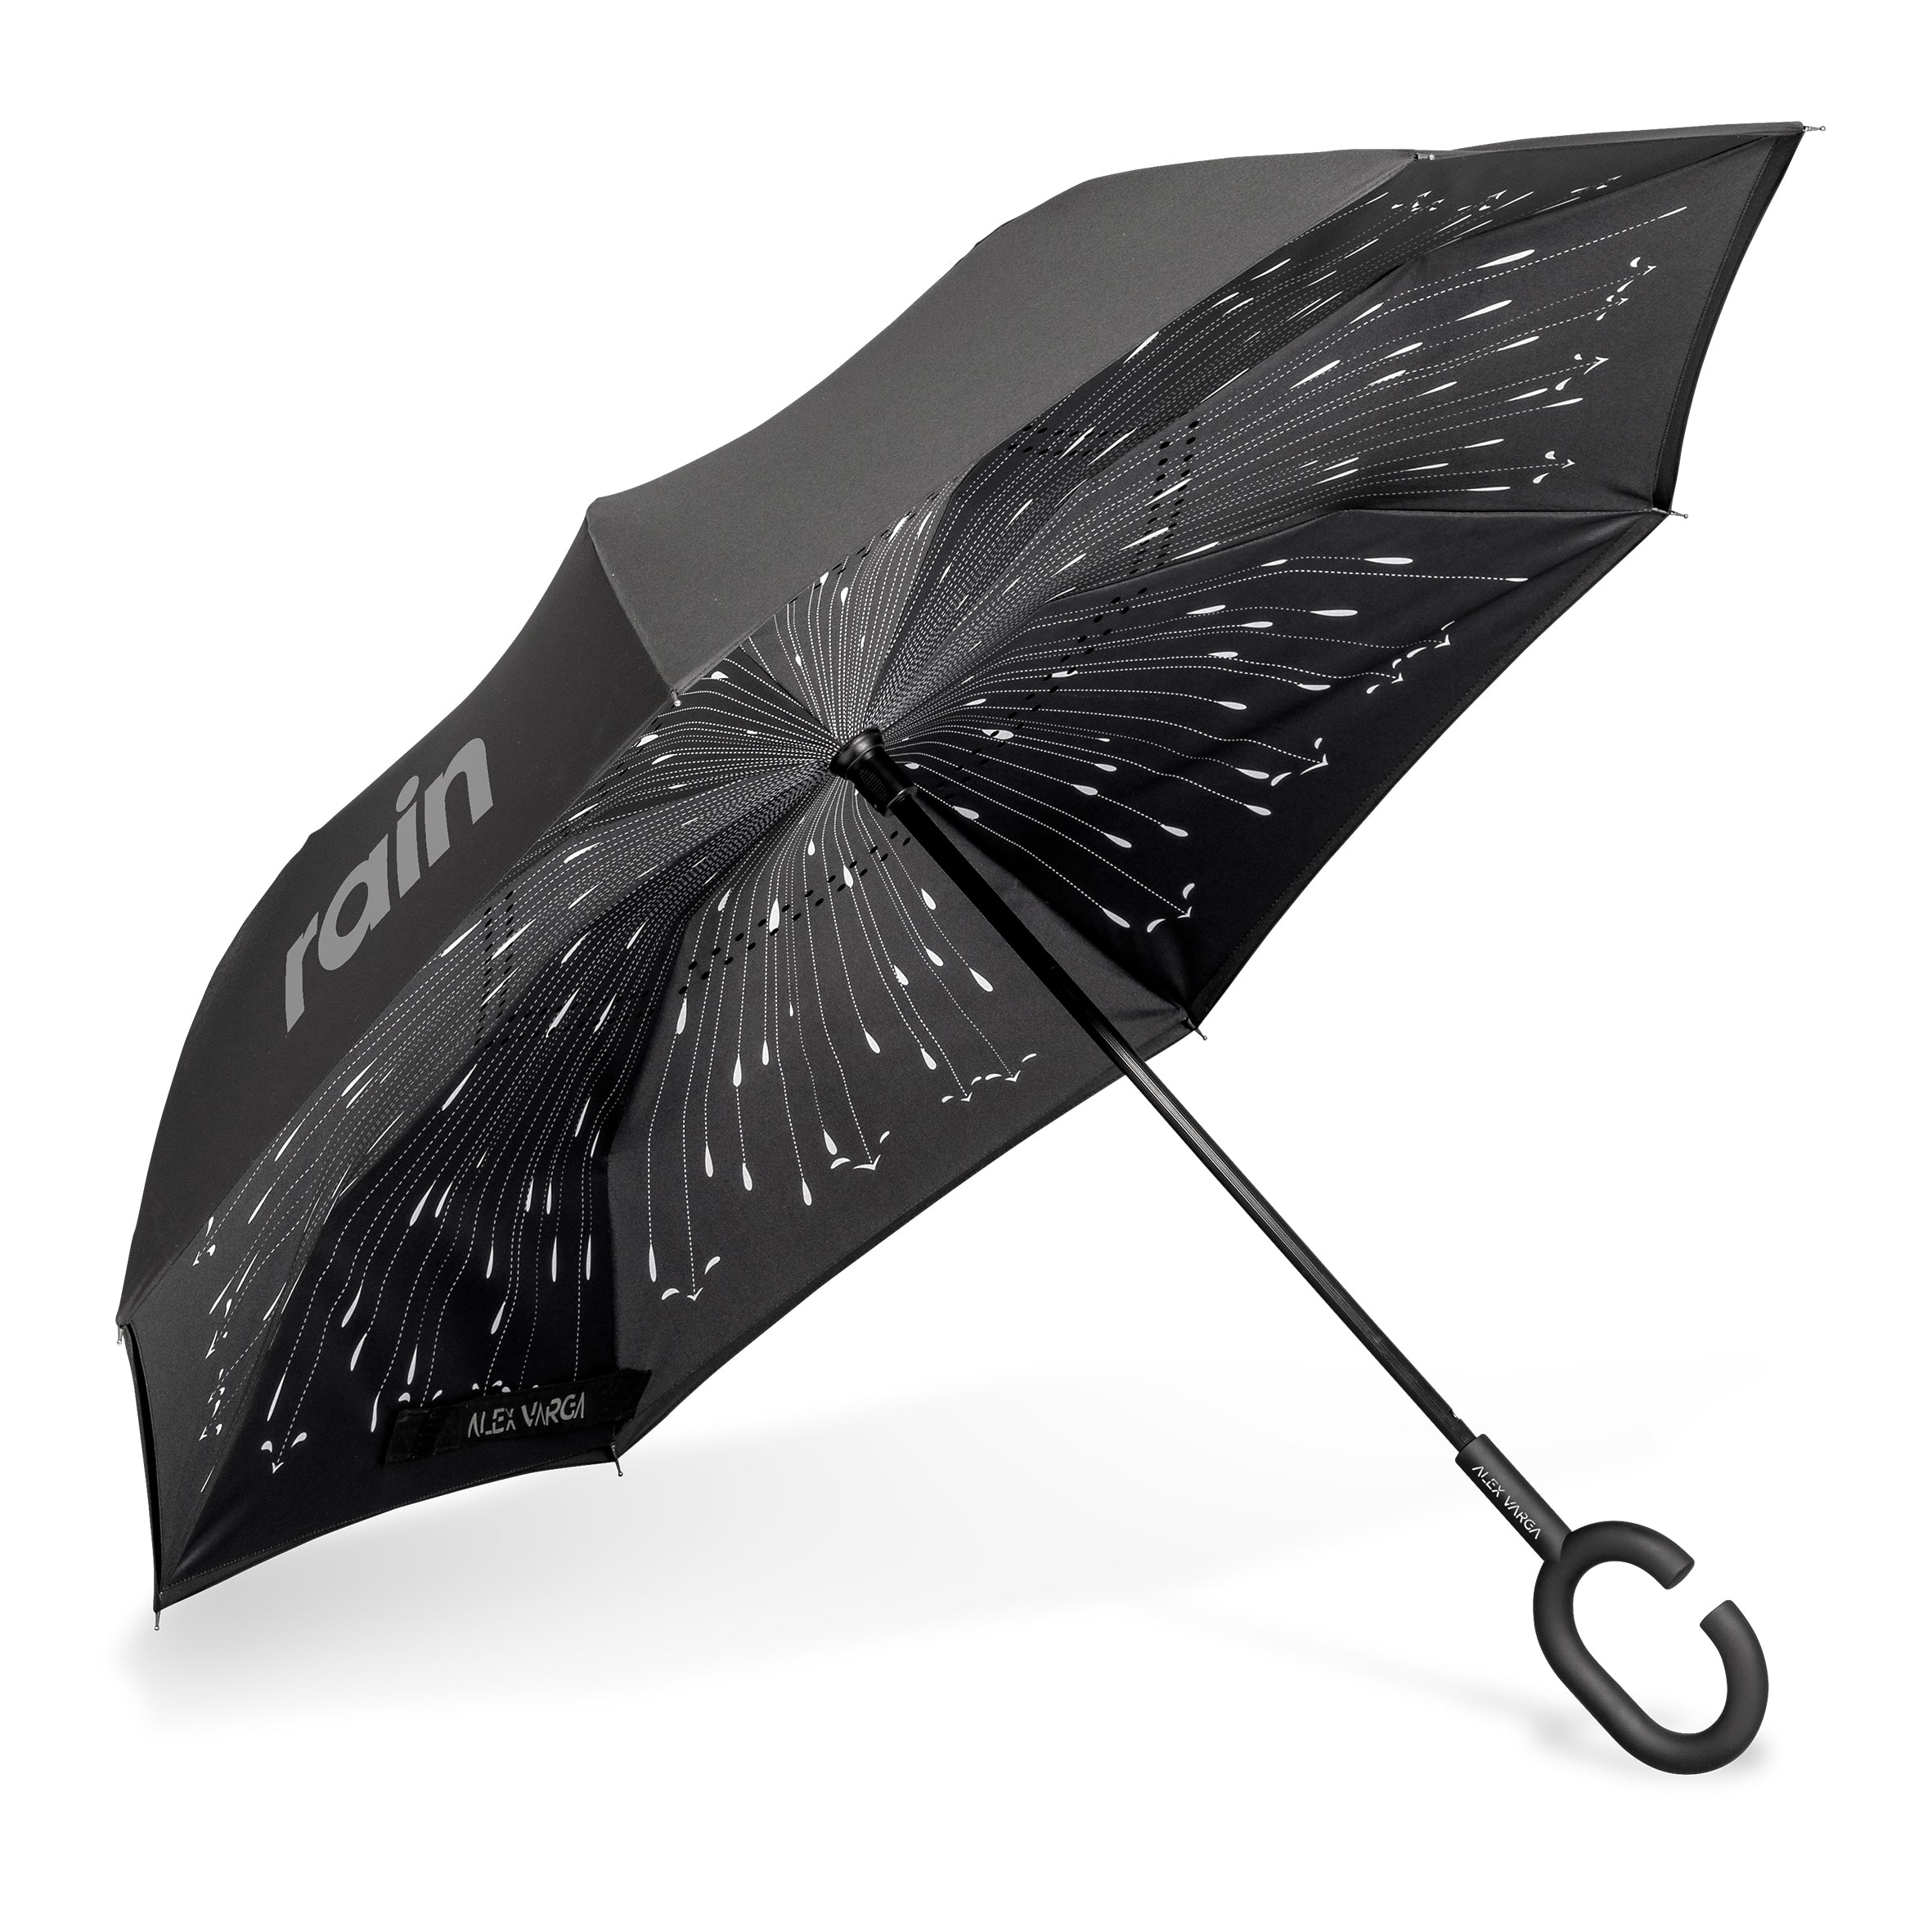 Tempest Umbrella